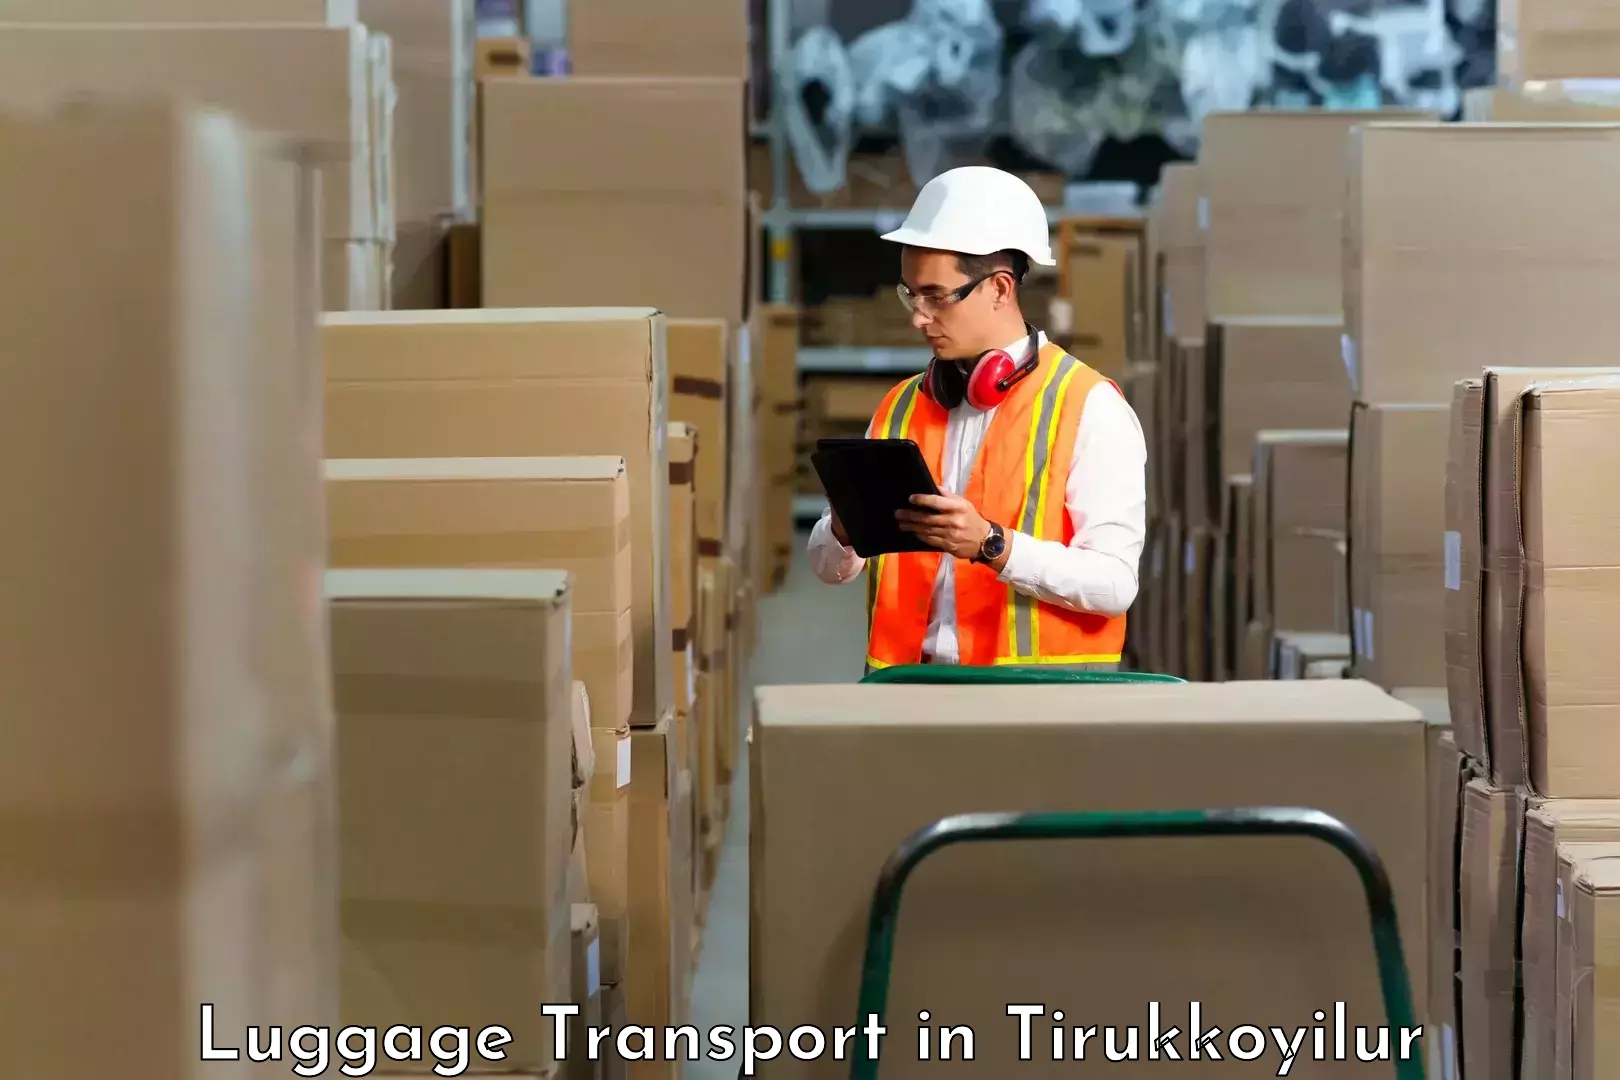 Holiday baggage shipping in Tirukkoyilur